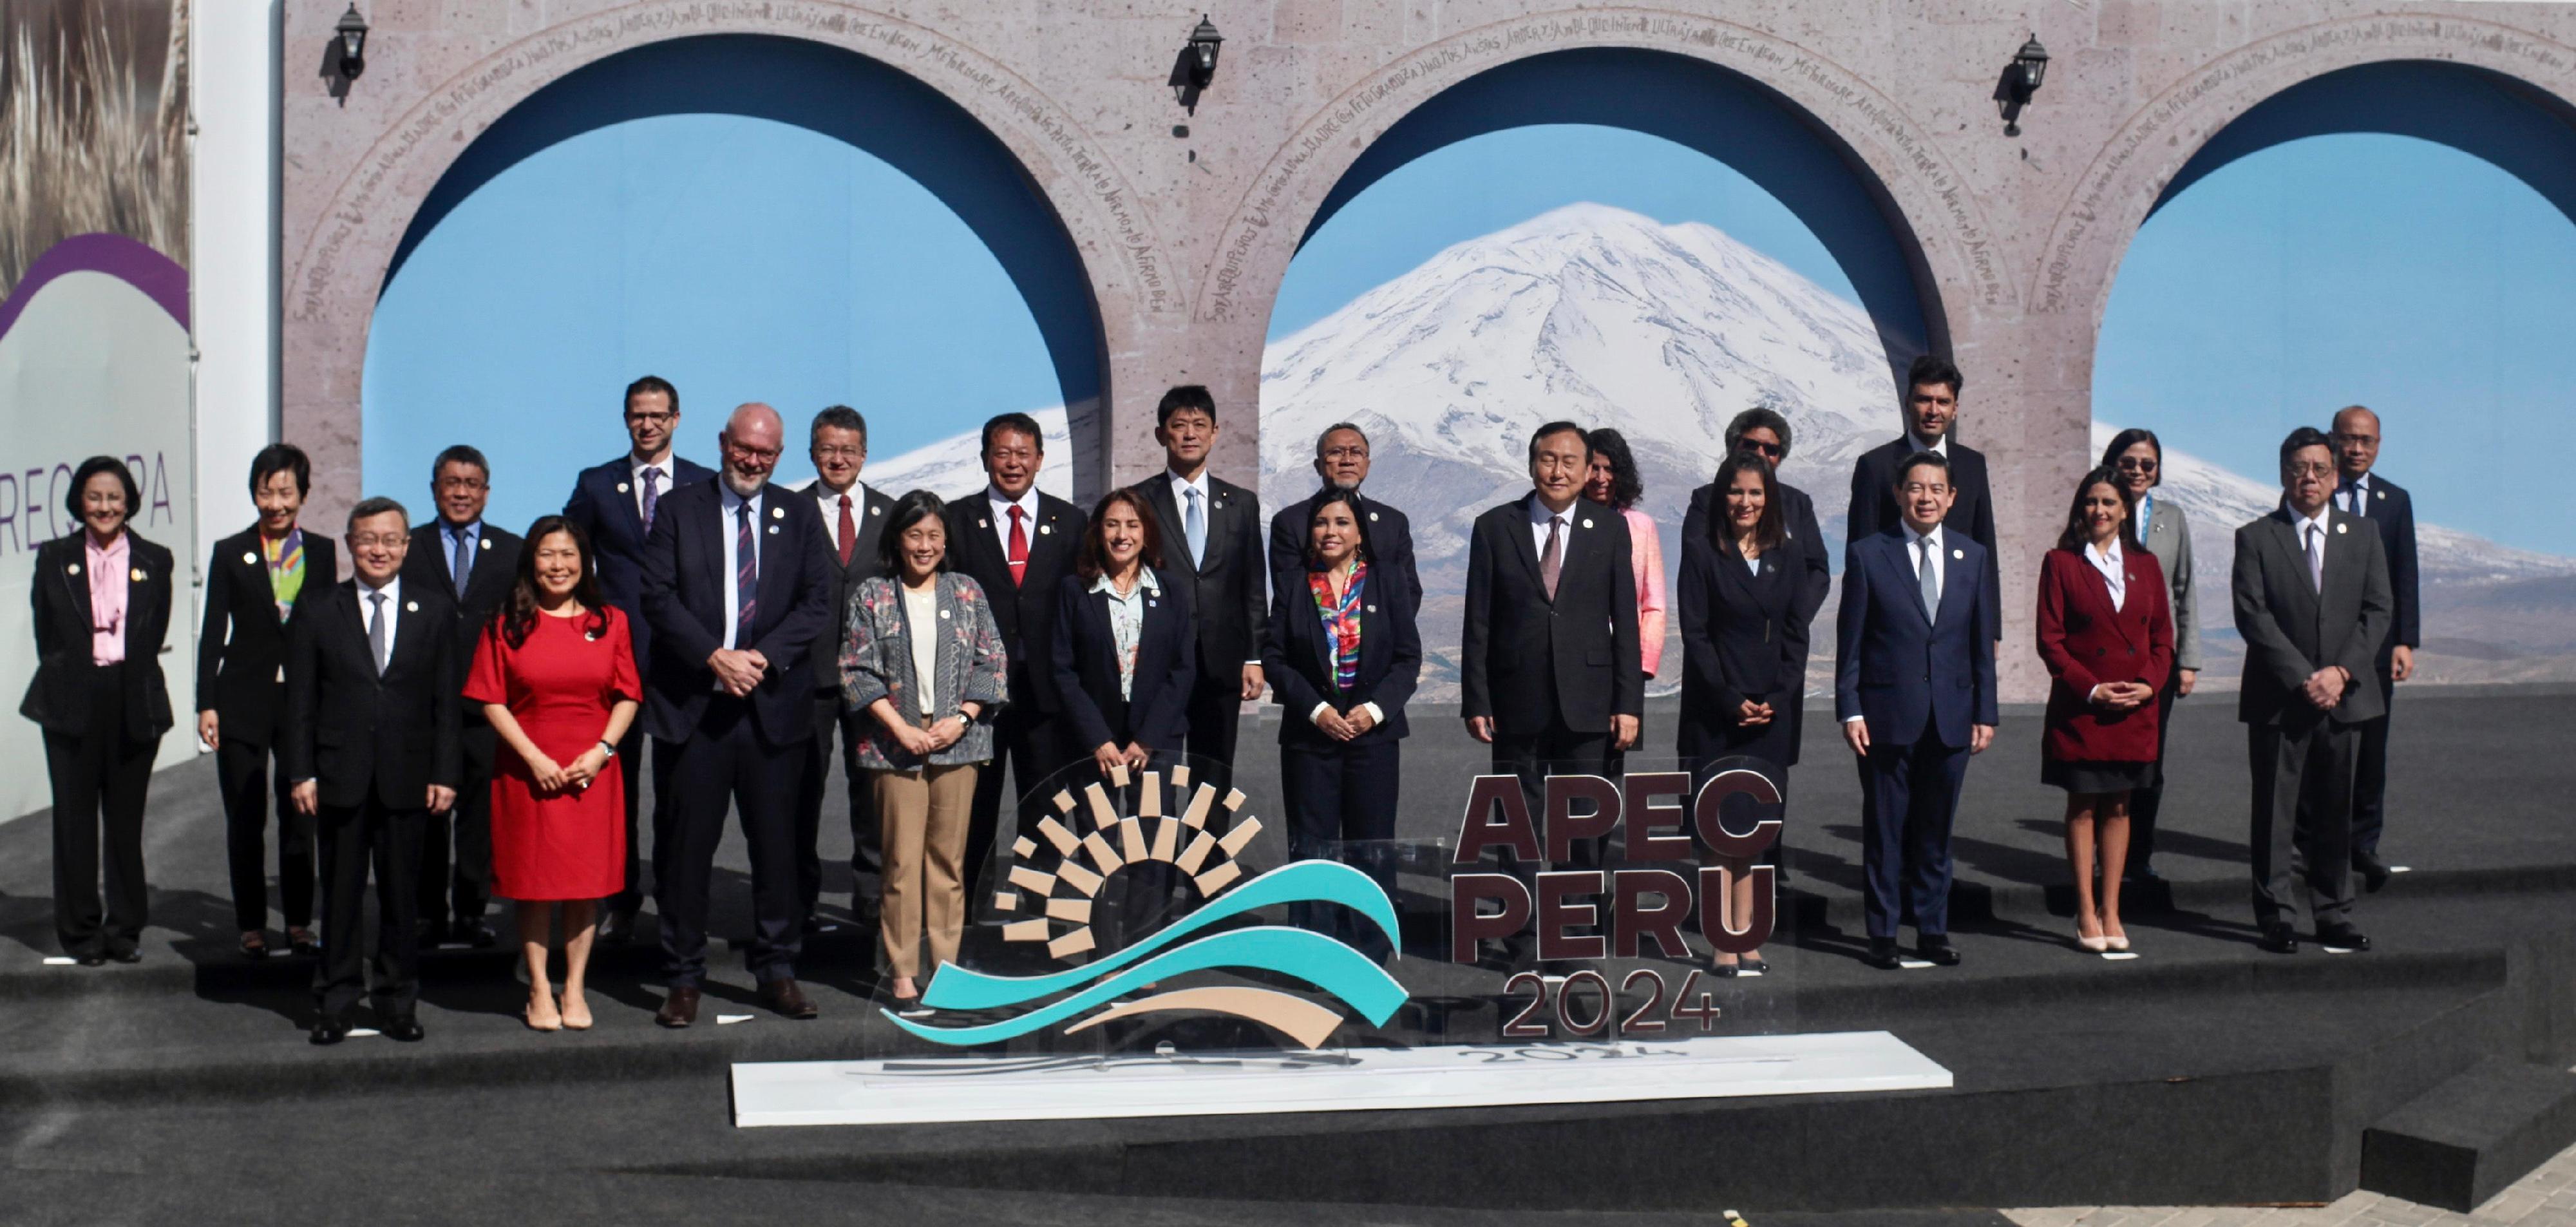 商务及经济发展局局长丘应桦五月十八日（阿雷基帕时间）在秘鲁阿雷基帕出席亚太区经济合作组织贸易部长会议。图示丘应桦（前排右一）与其他与会部长合照。